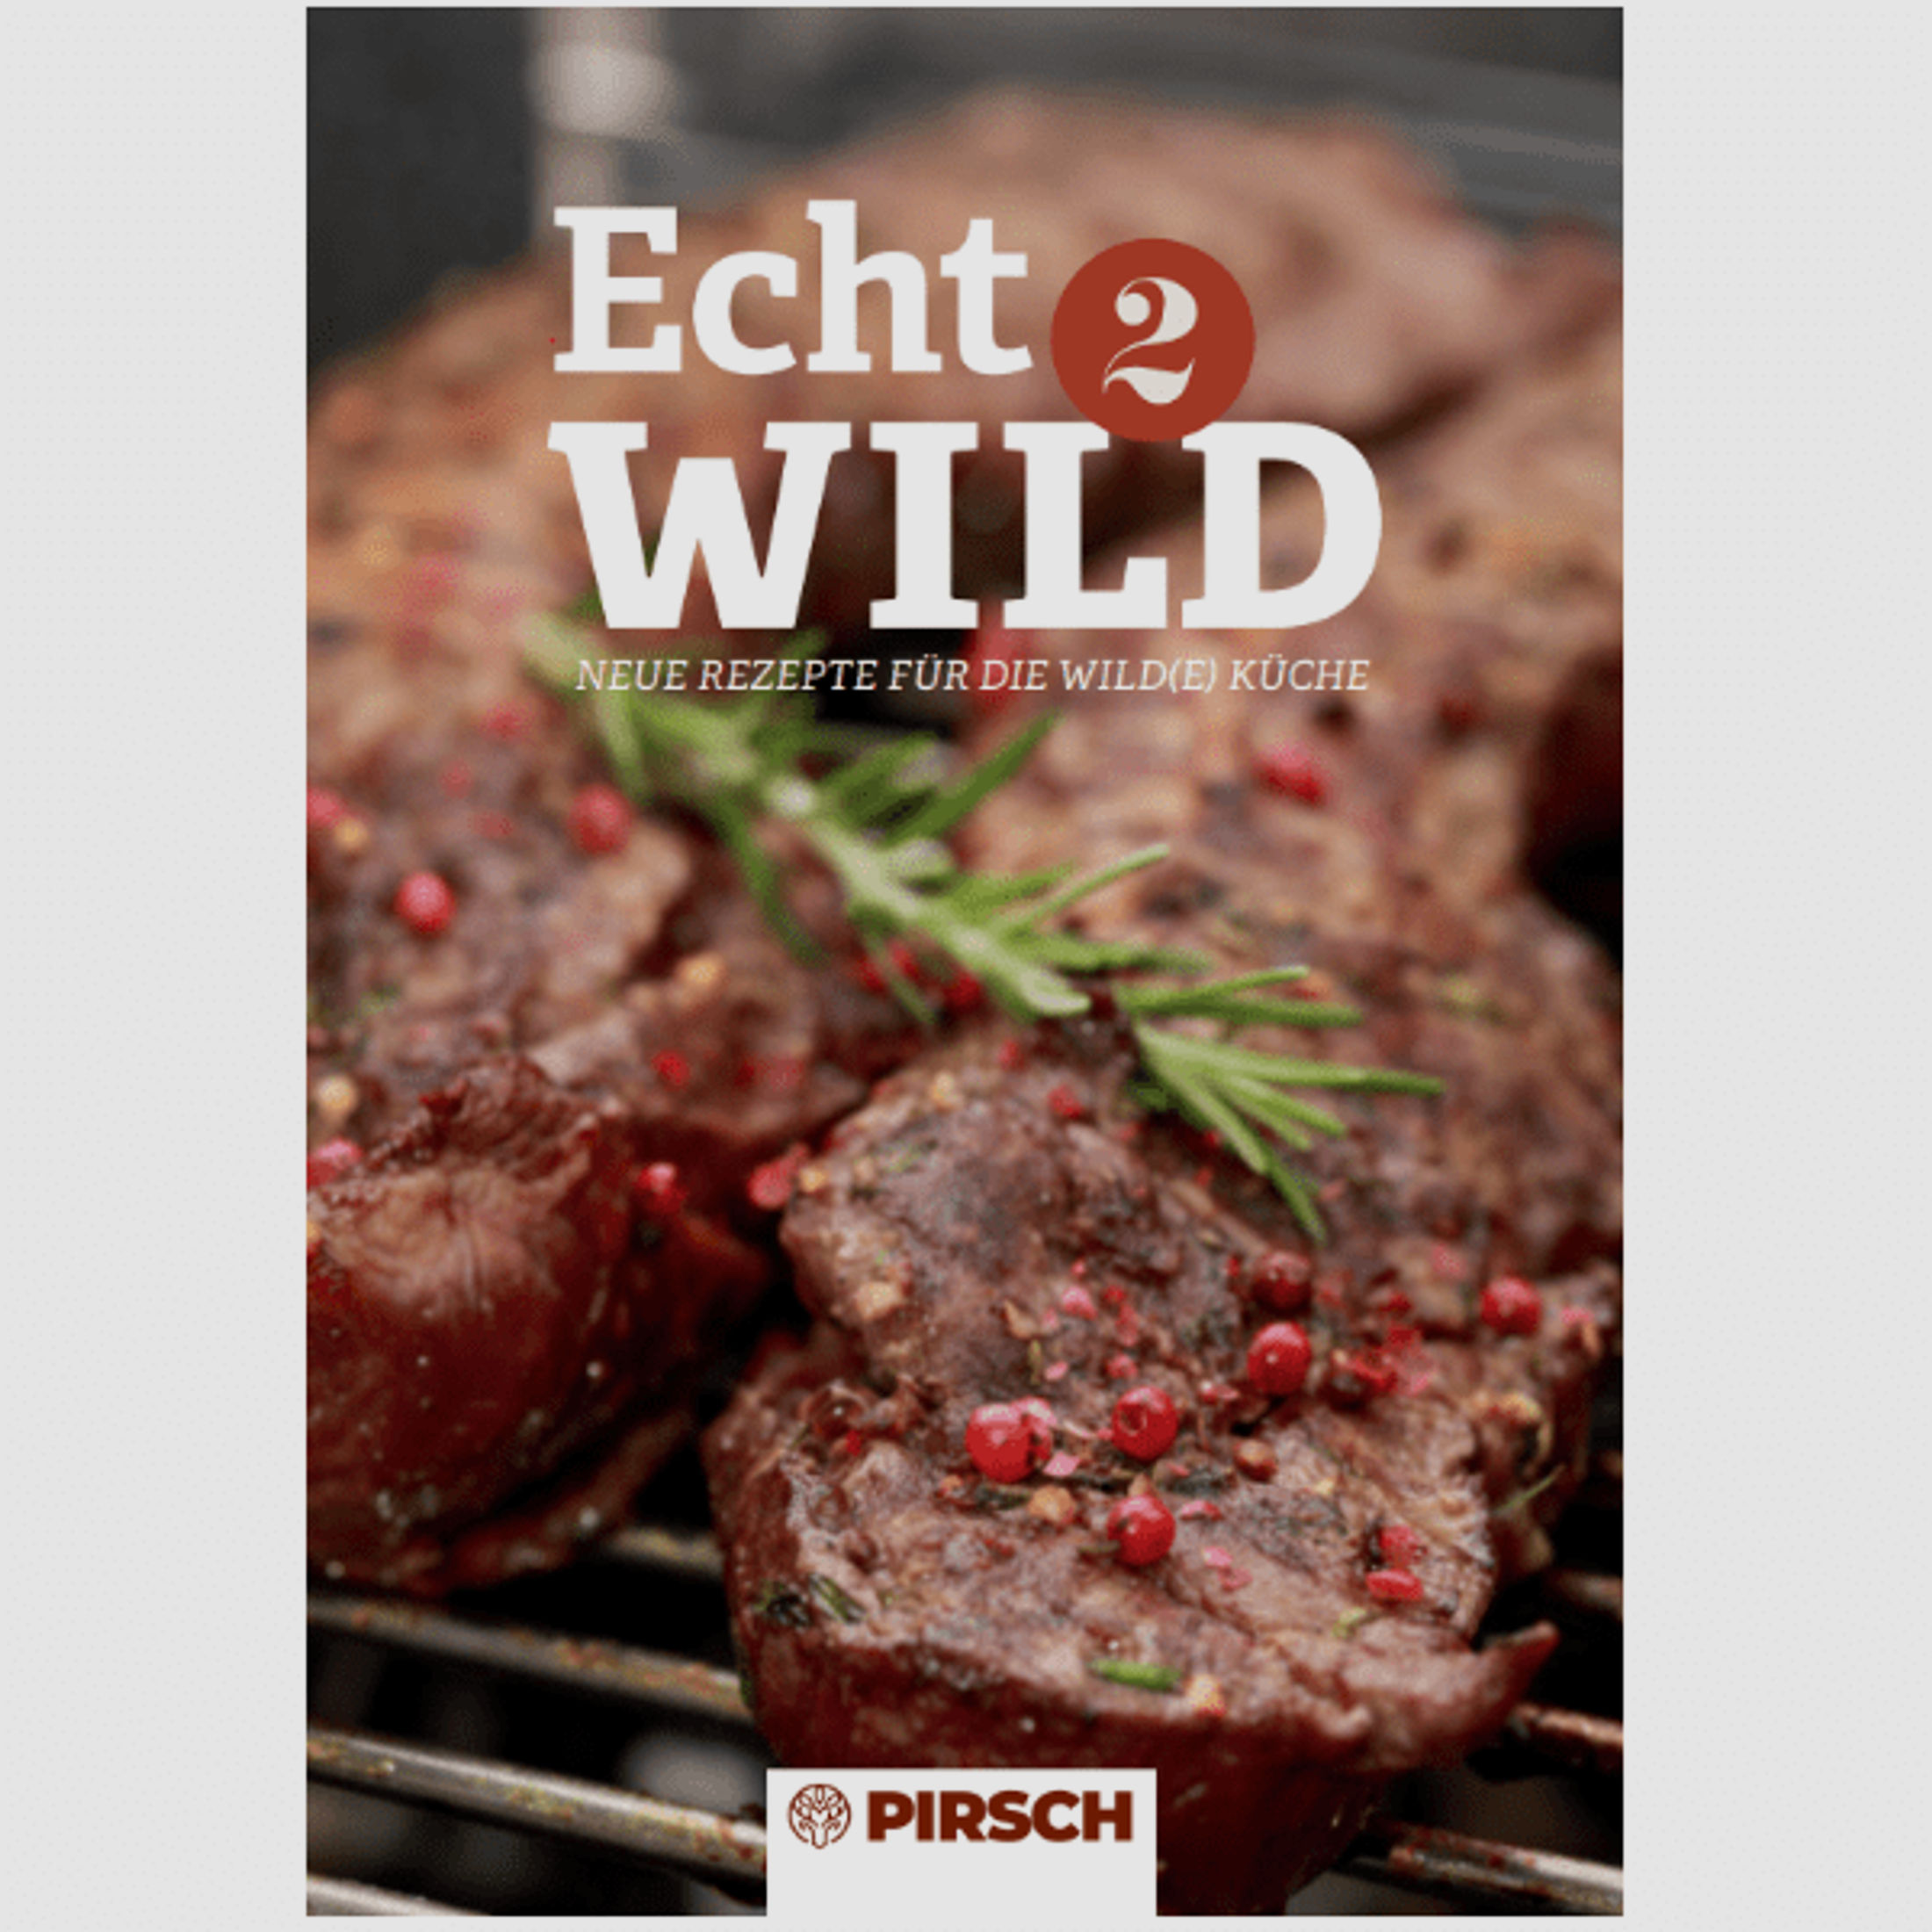 Echt Wild 2: Neue Rezepte für die wild(e) Küche